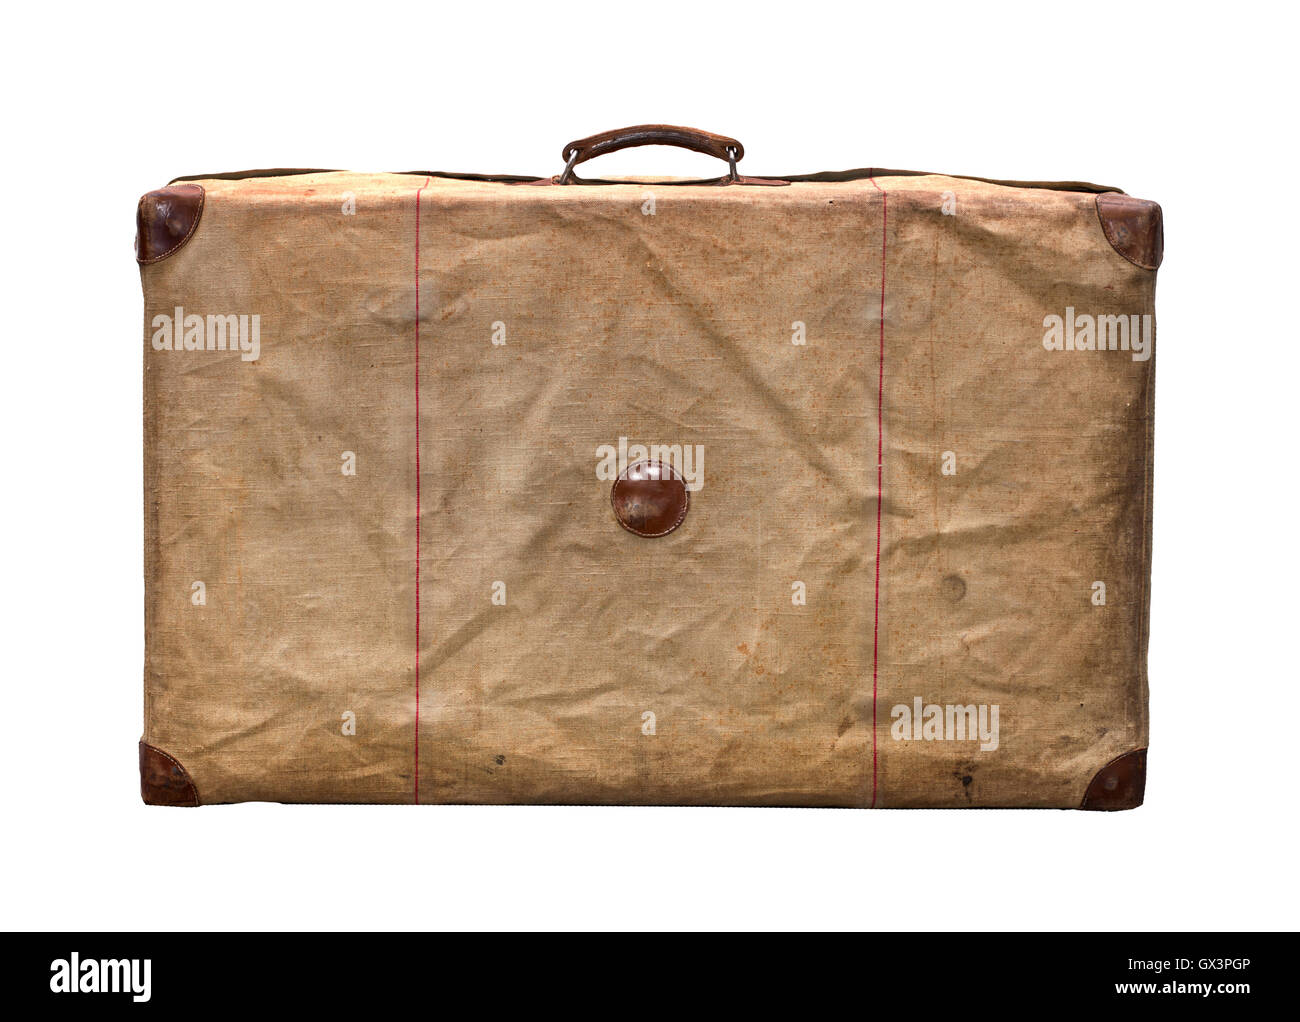 Comprar maleta vintage metálica antigua oxidada para decoración